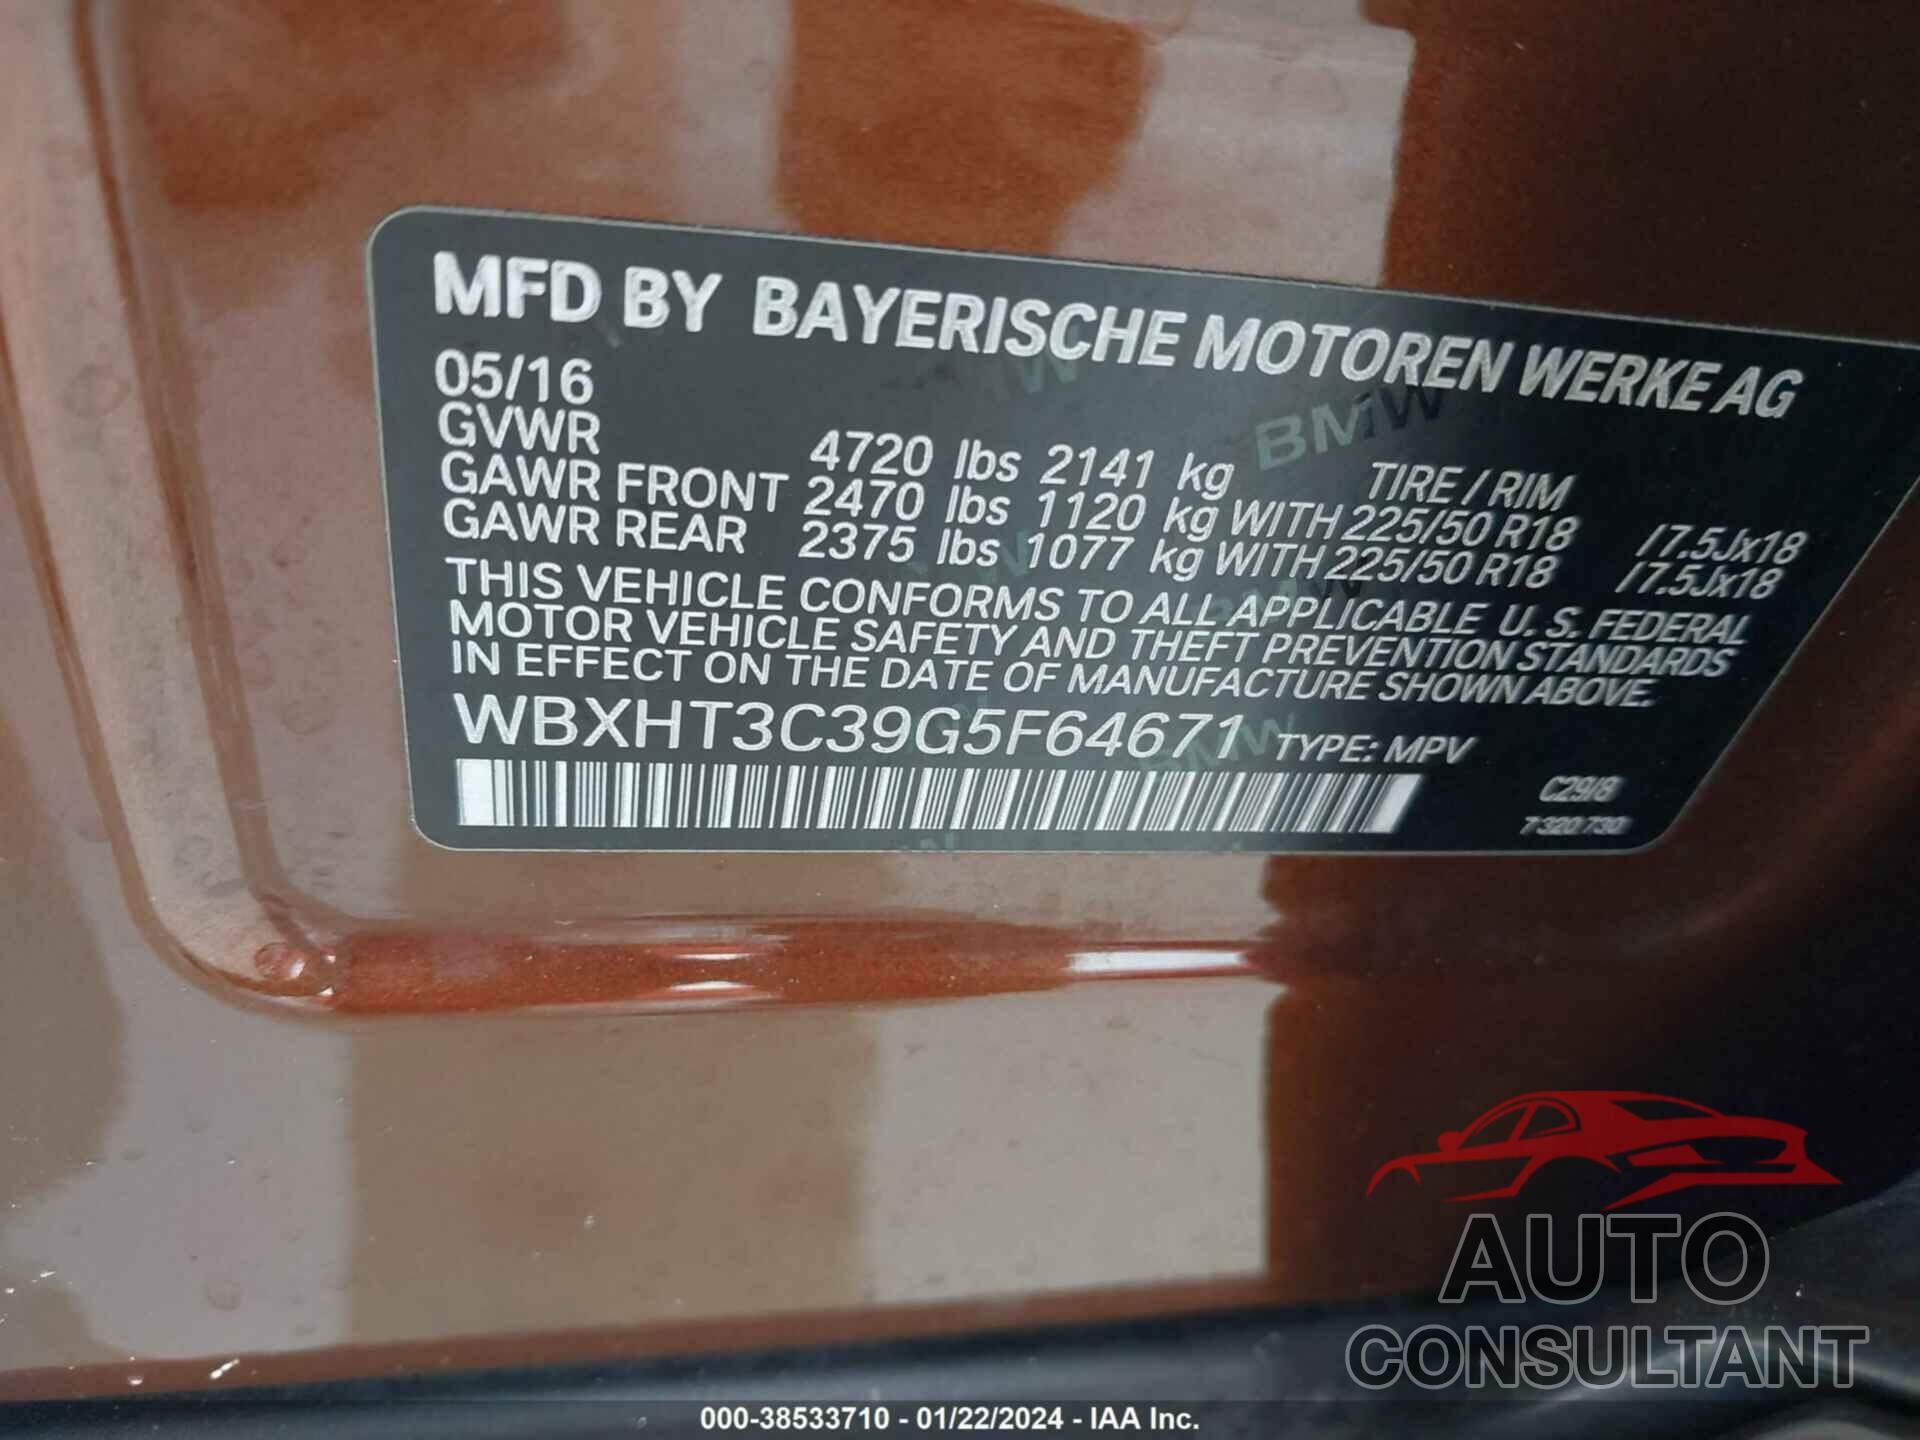 BMW X1 2016 - WBXHT3C39G5F64671